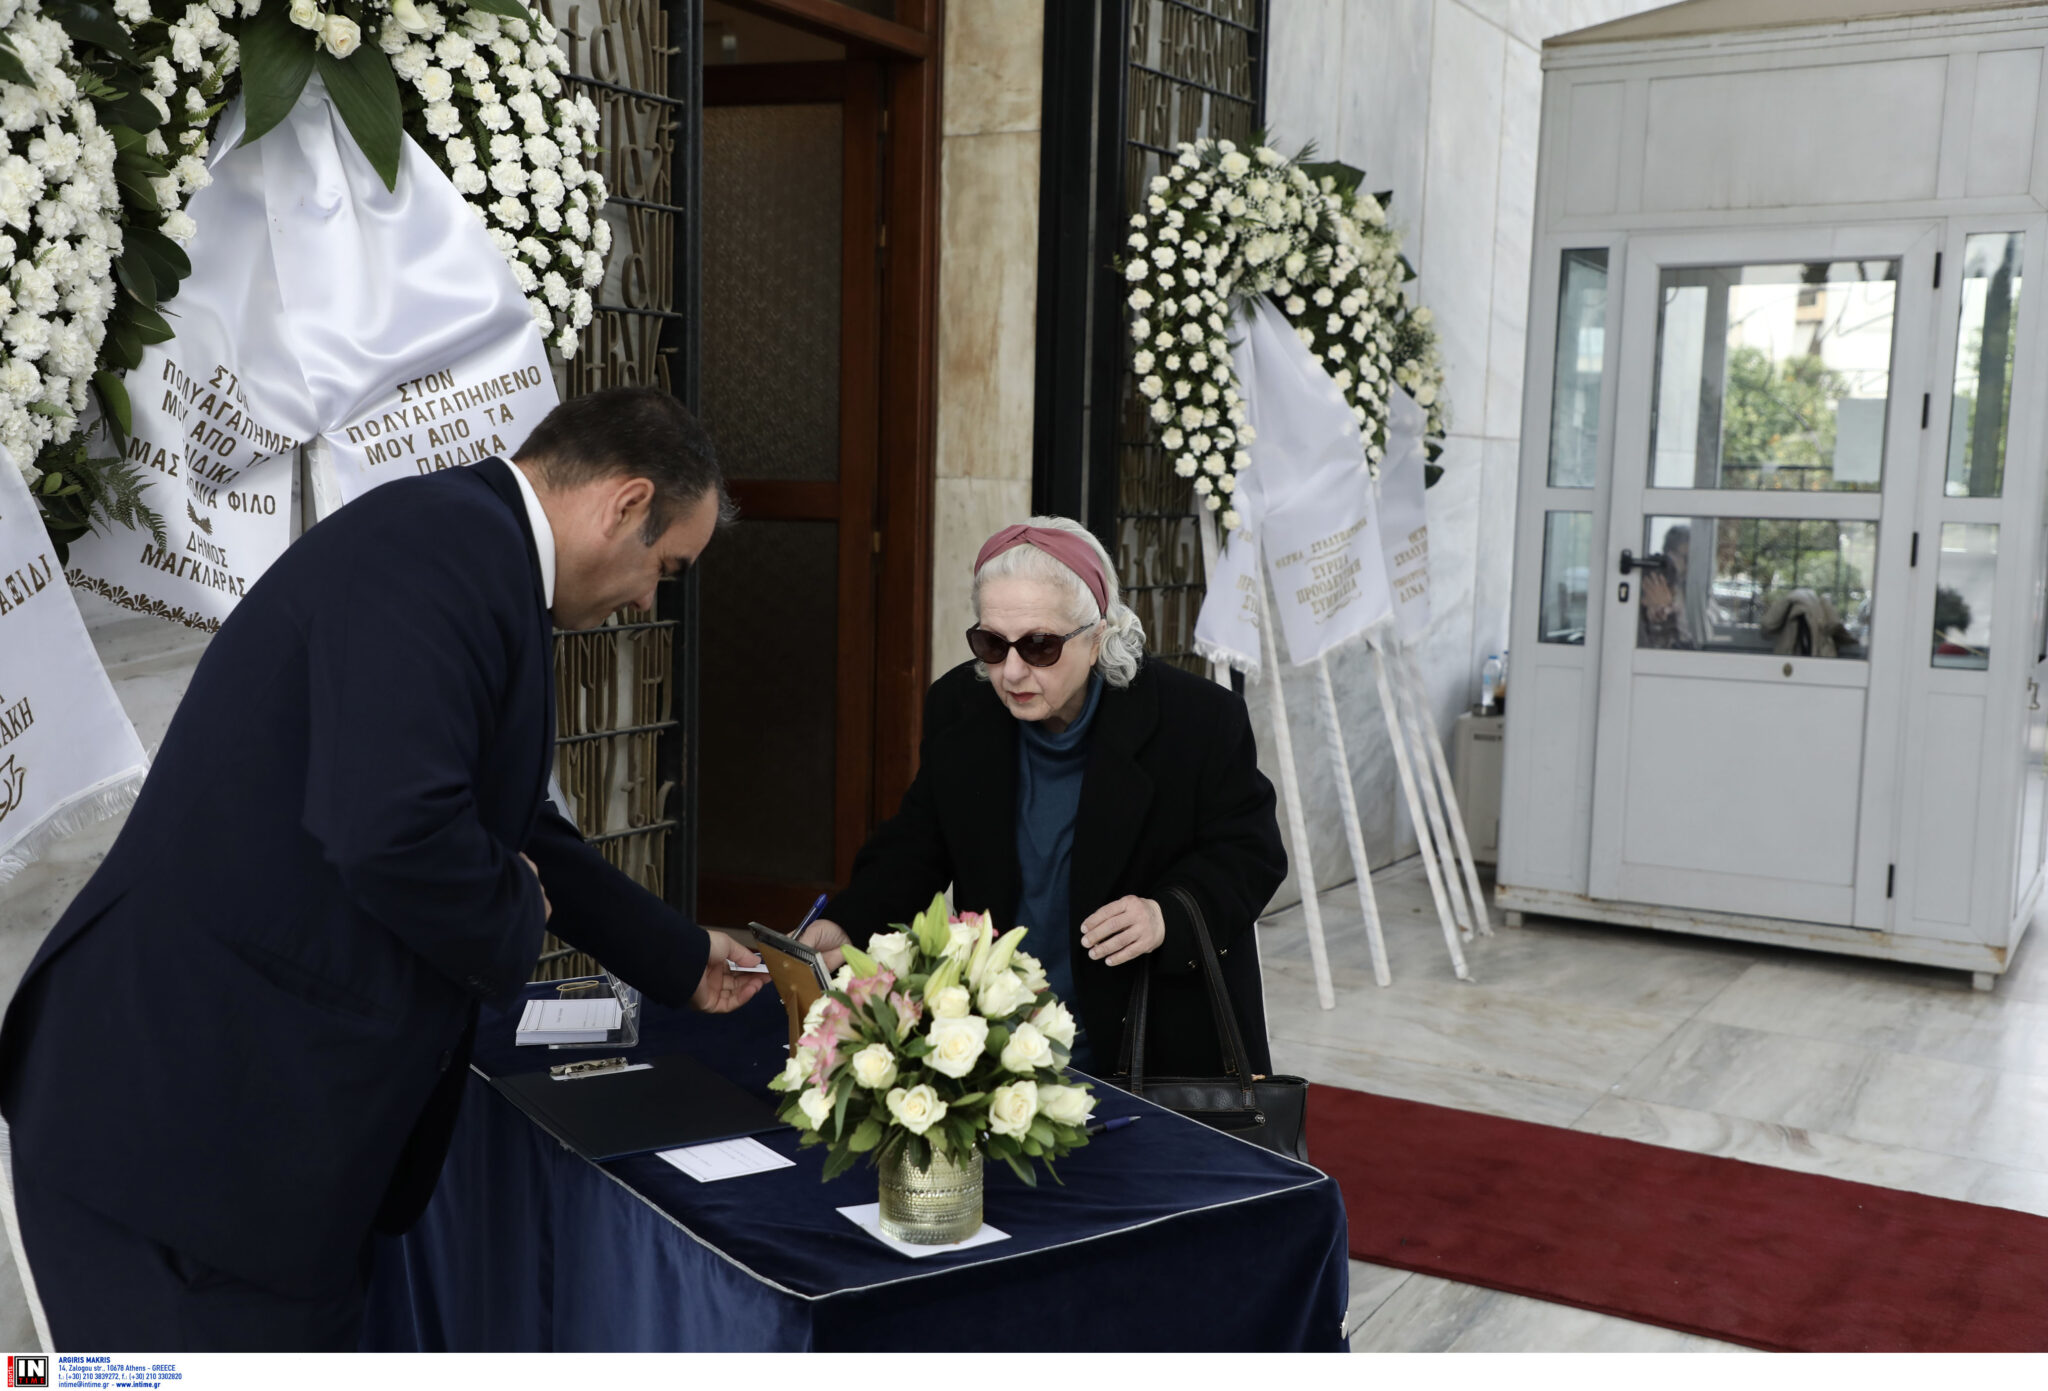 Γιώργος Μιχαλακόπουλος: Το τελευταίο αντίο του ηθοποιό στο Α’ Νεκροταφείο Αθηνών (Εικόνες)